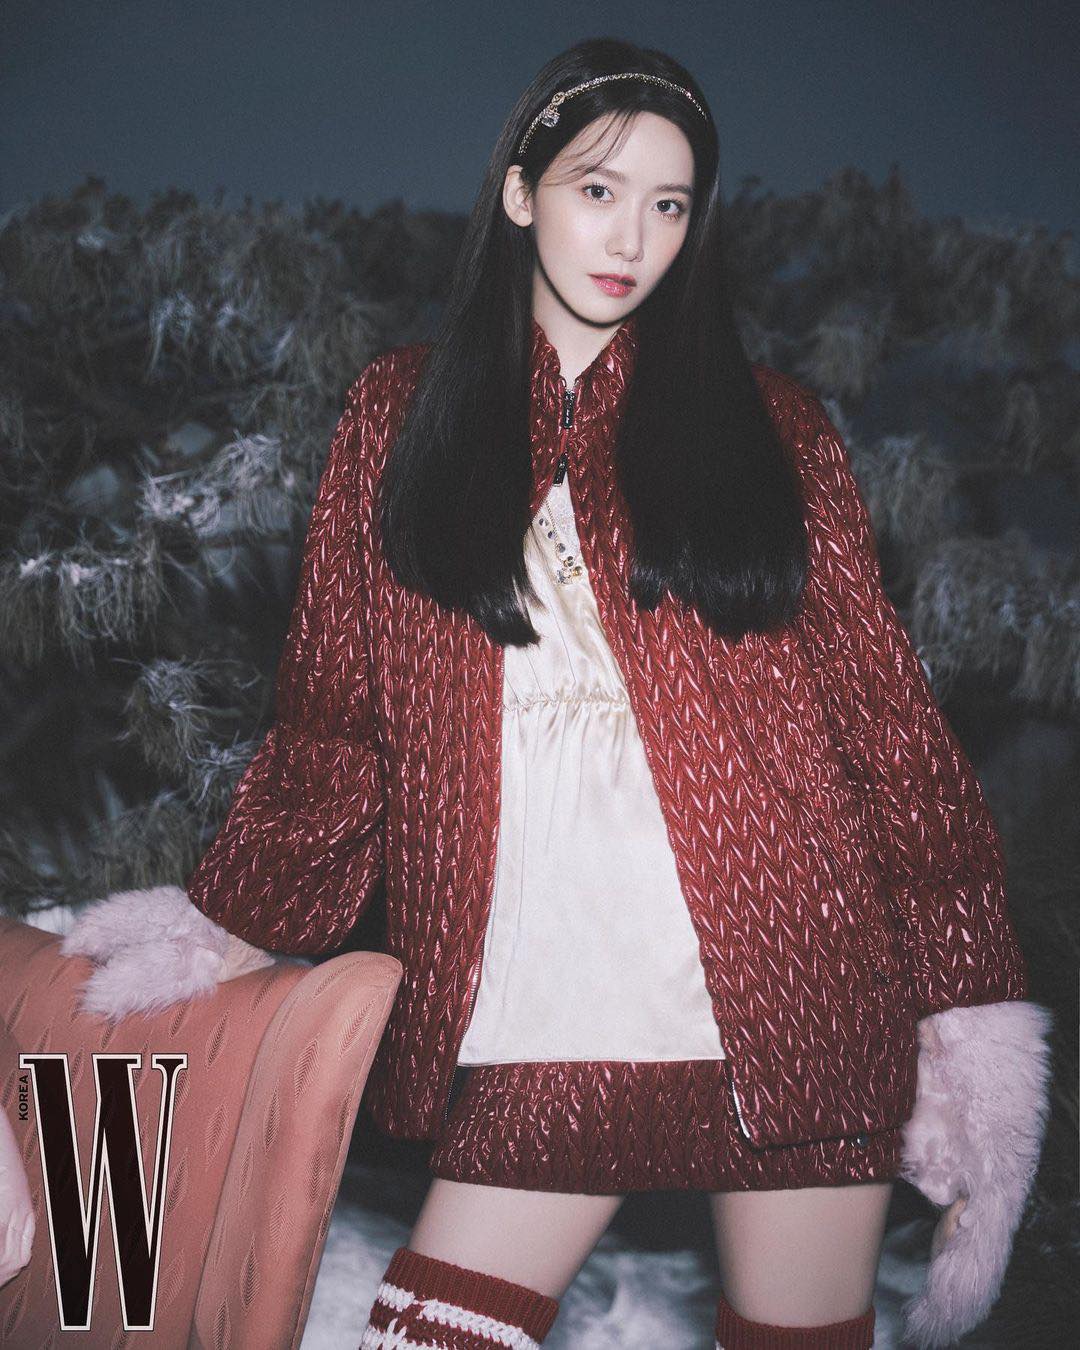 Yoona khoe trọn nhan sắc xinh đẹp 'không góc chết' trong bộ ảnh mới của W Hàn Quốc. Cô nàng cũng được công bố là Đại sứ thương hiệu của nhãn hàng thời trang Miu Miu.